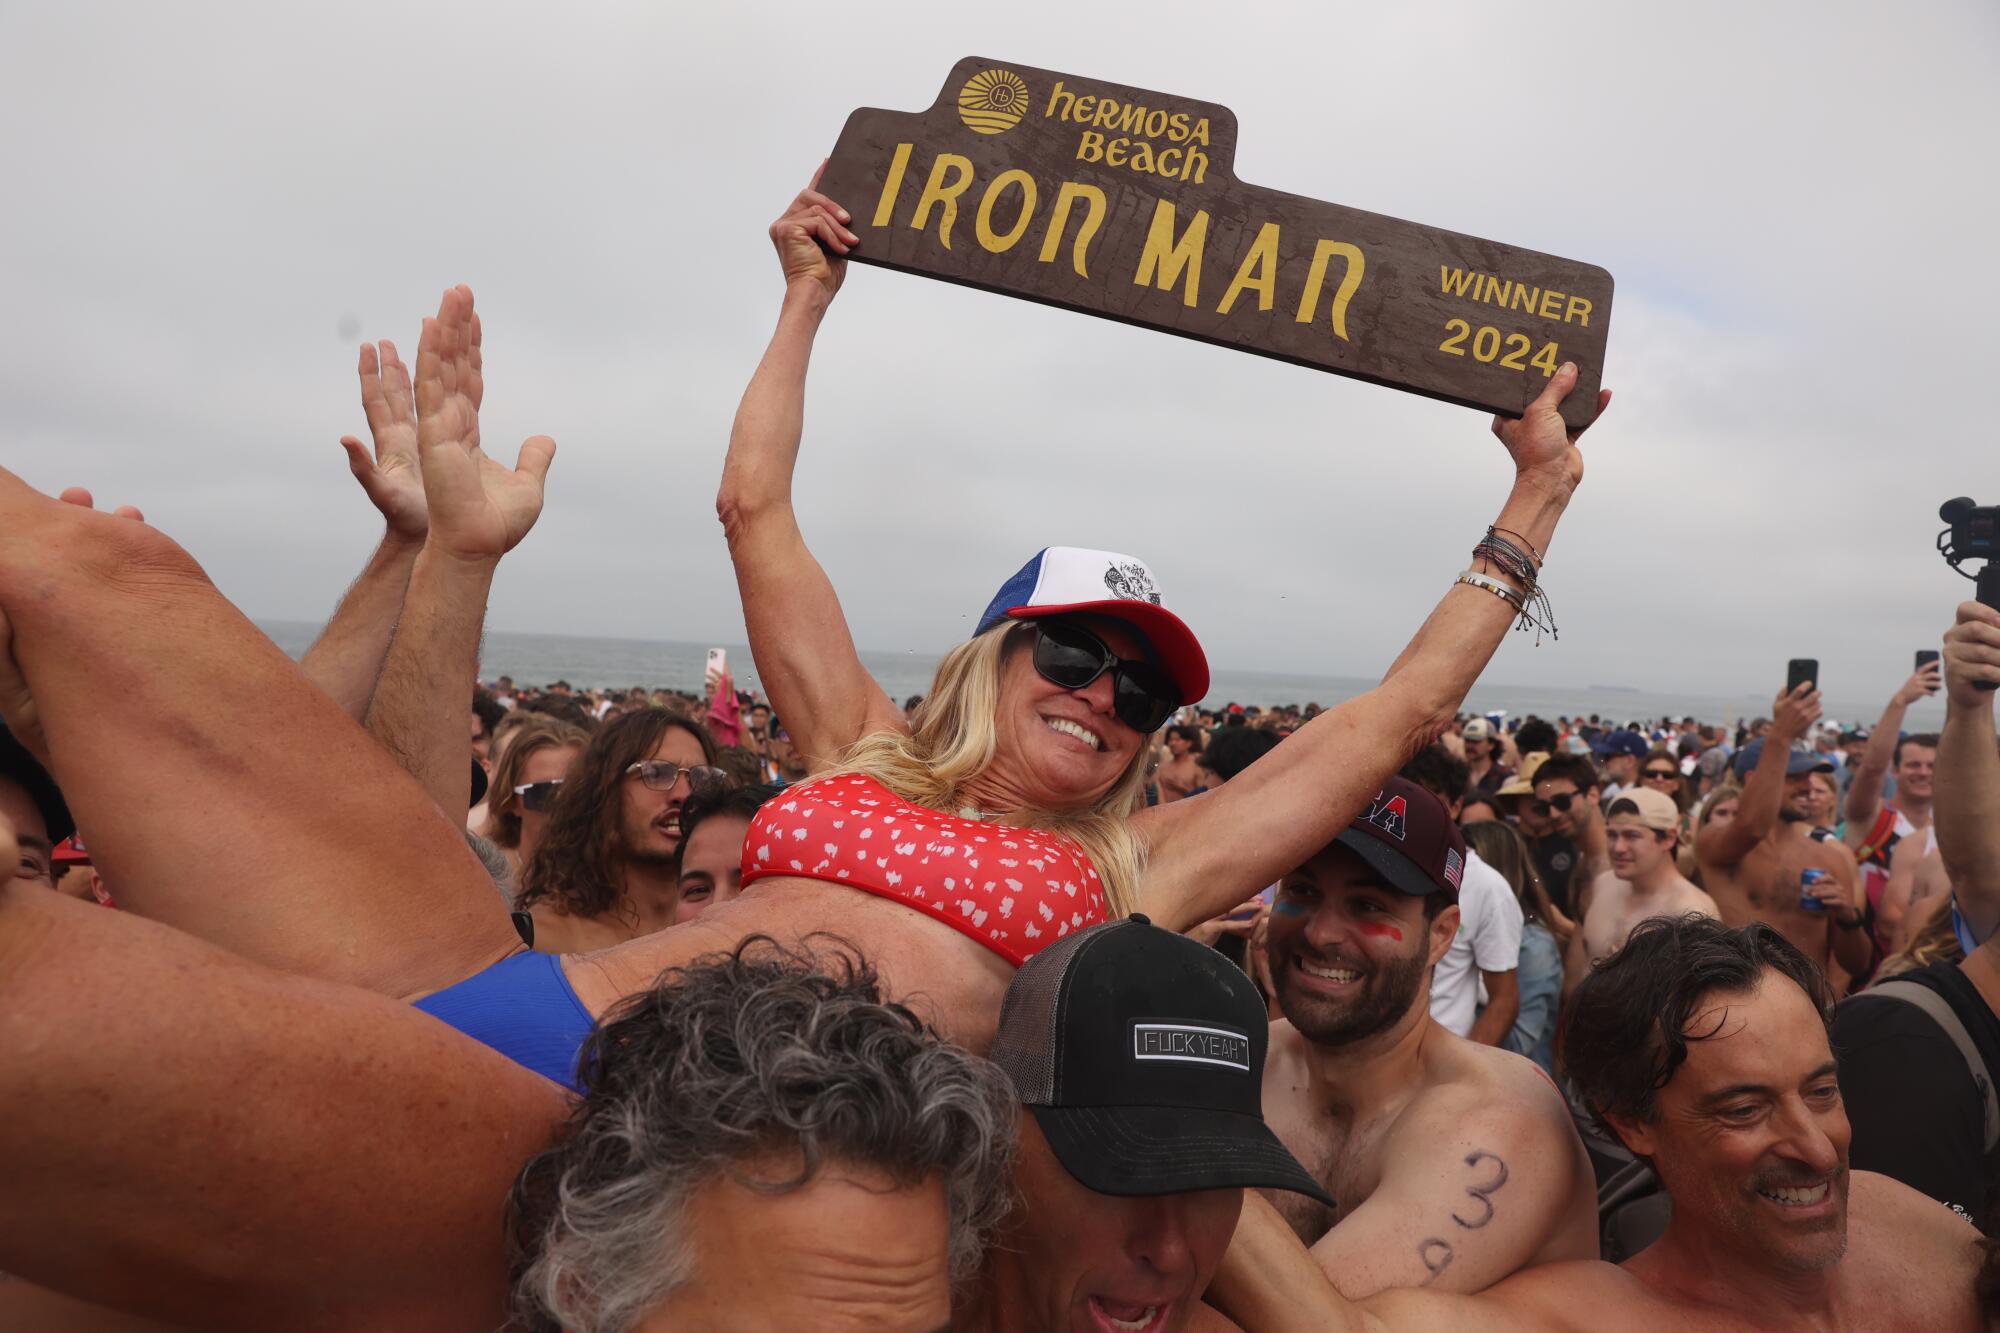 Una mujer sostiene un cartel que dice "Hombre de hierro" mientras muchas personas la levantan en el aire.